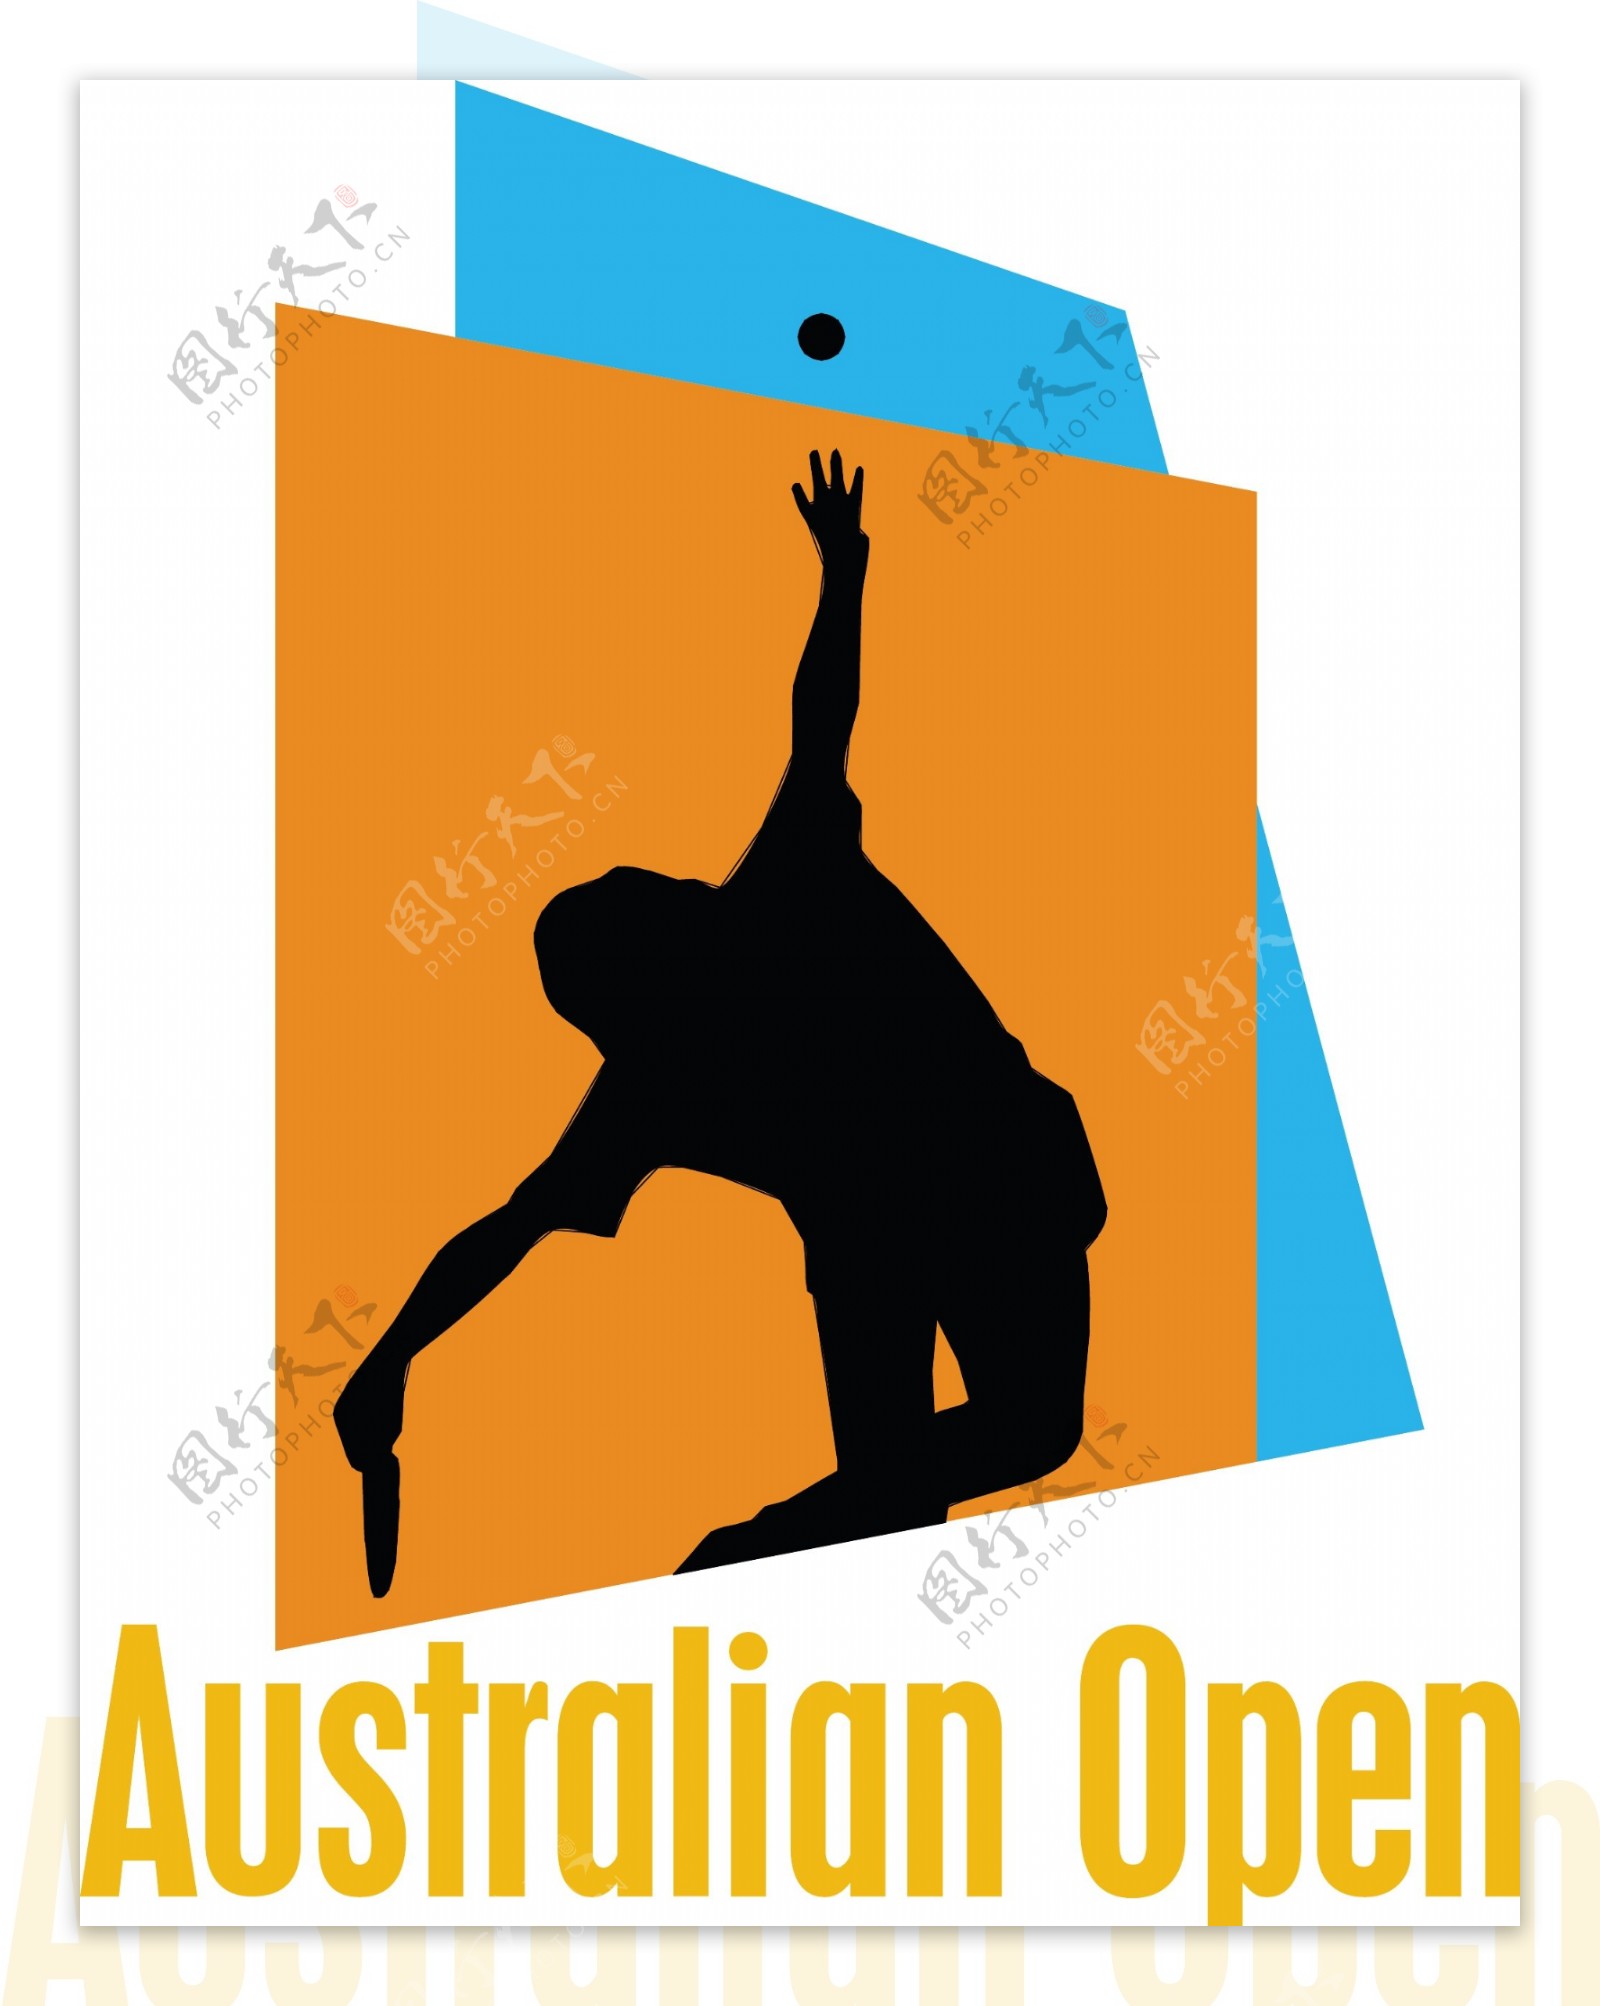 1澳大利亚网球公开赛